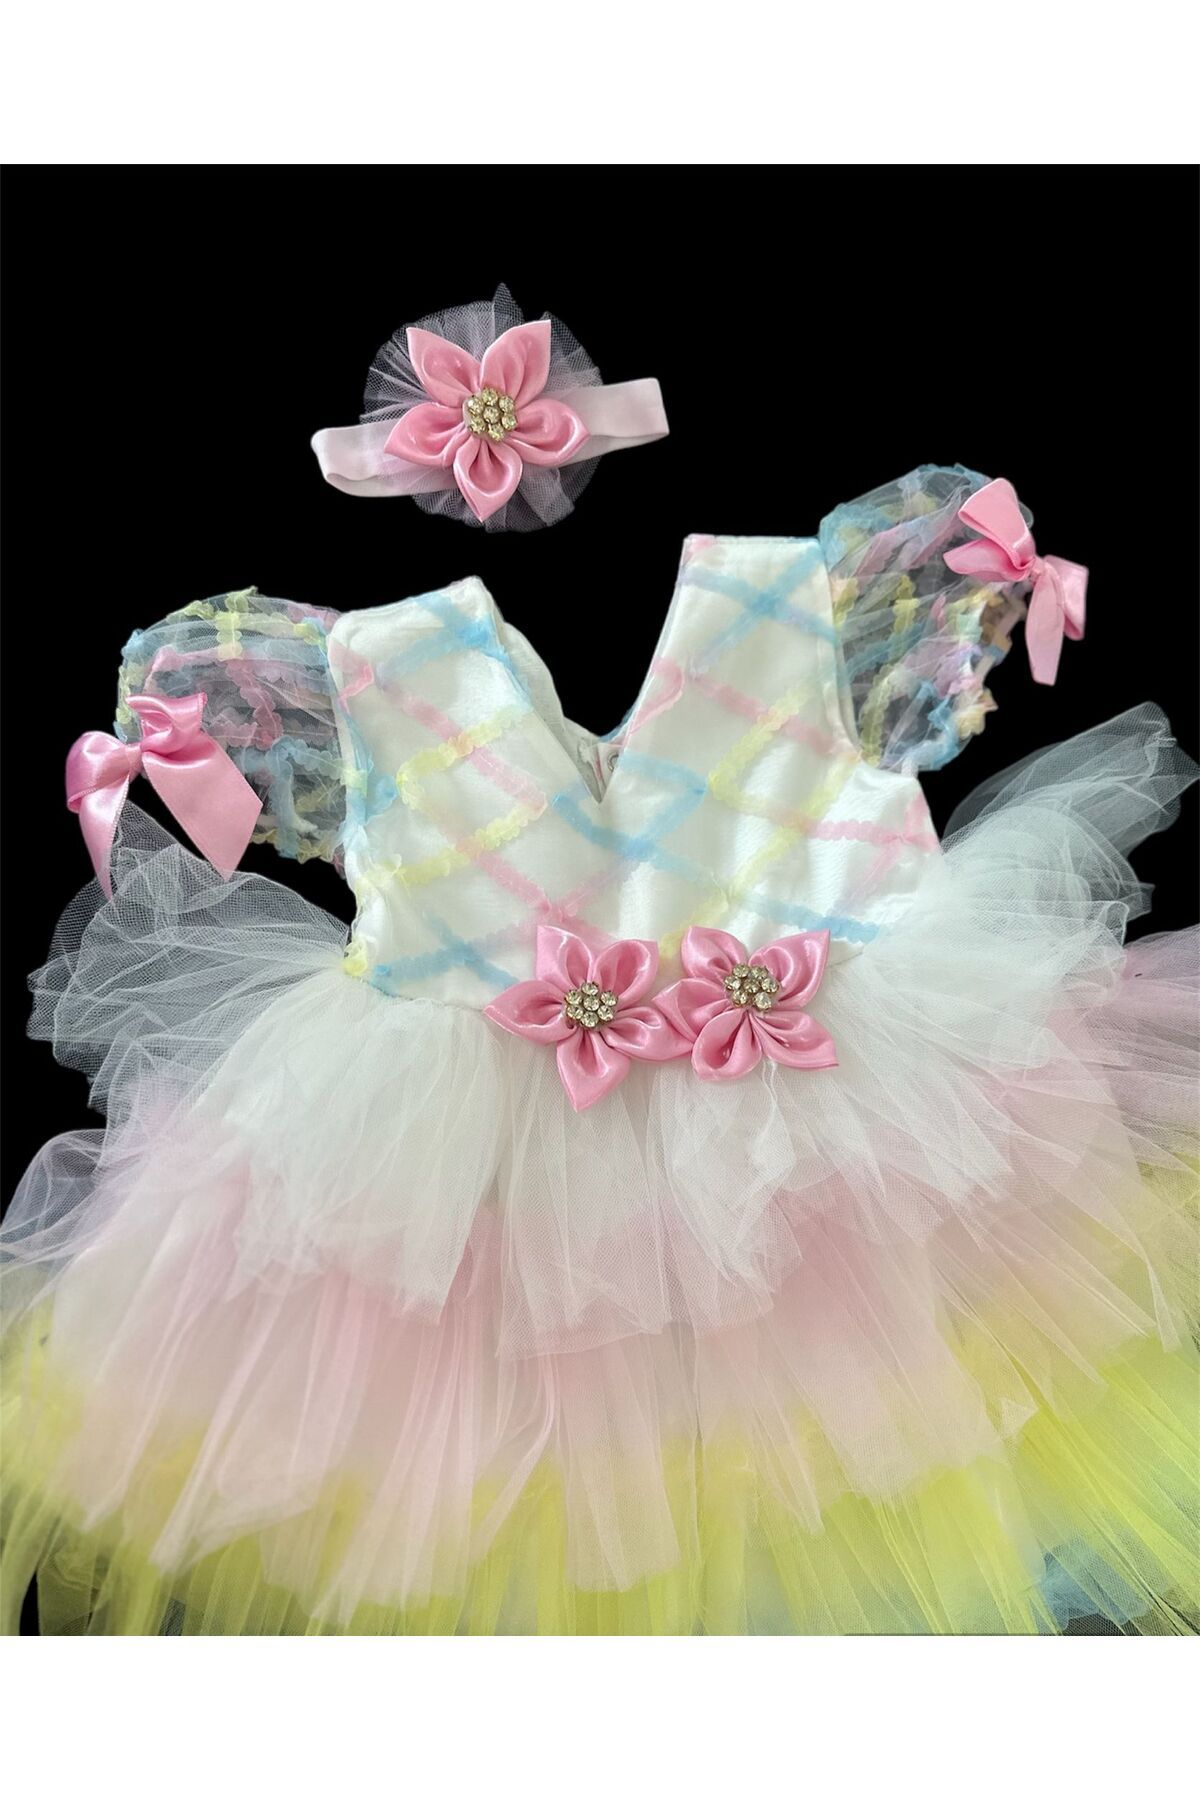 Ponpon Baby 1 yaş kız bebek renkli katkat tüllü prenses elbisesi doğum günü kıyafeti